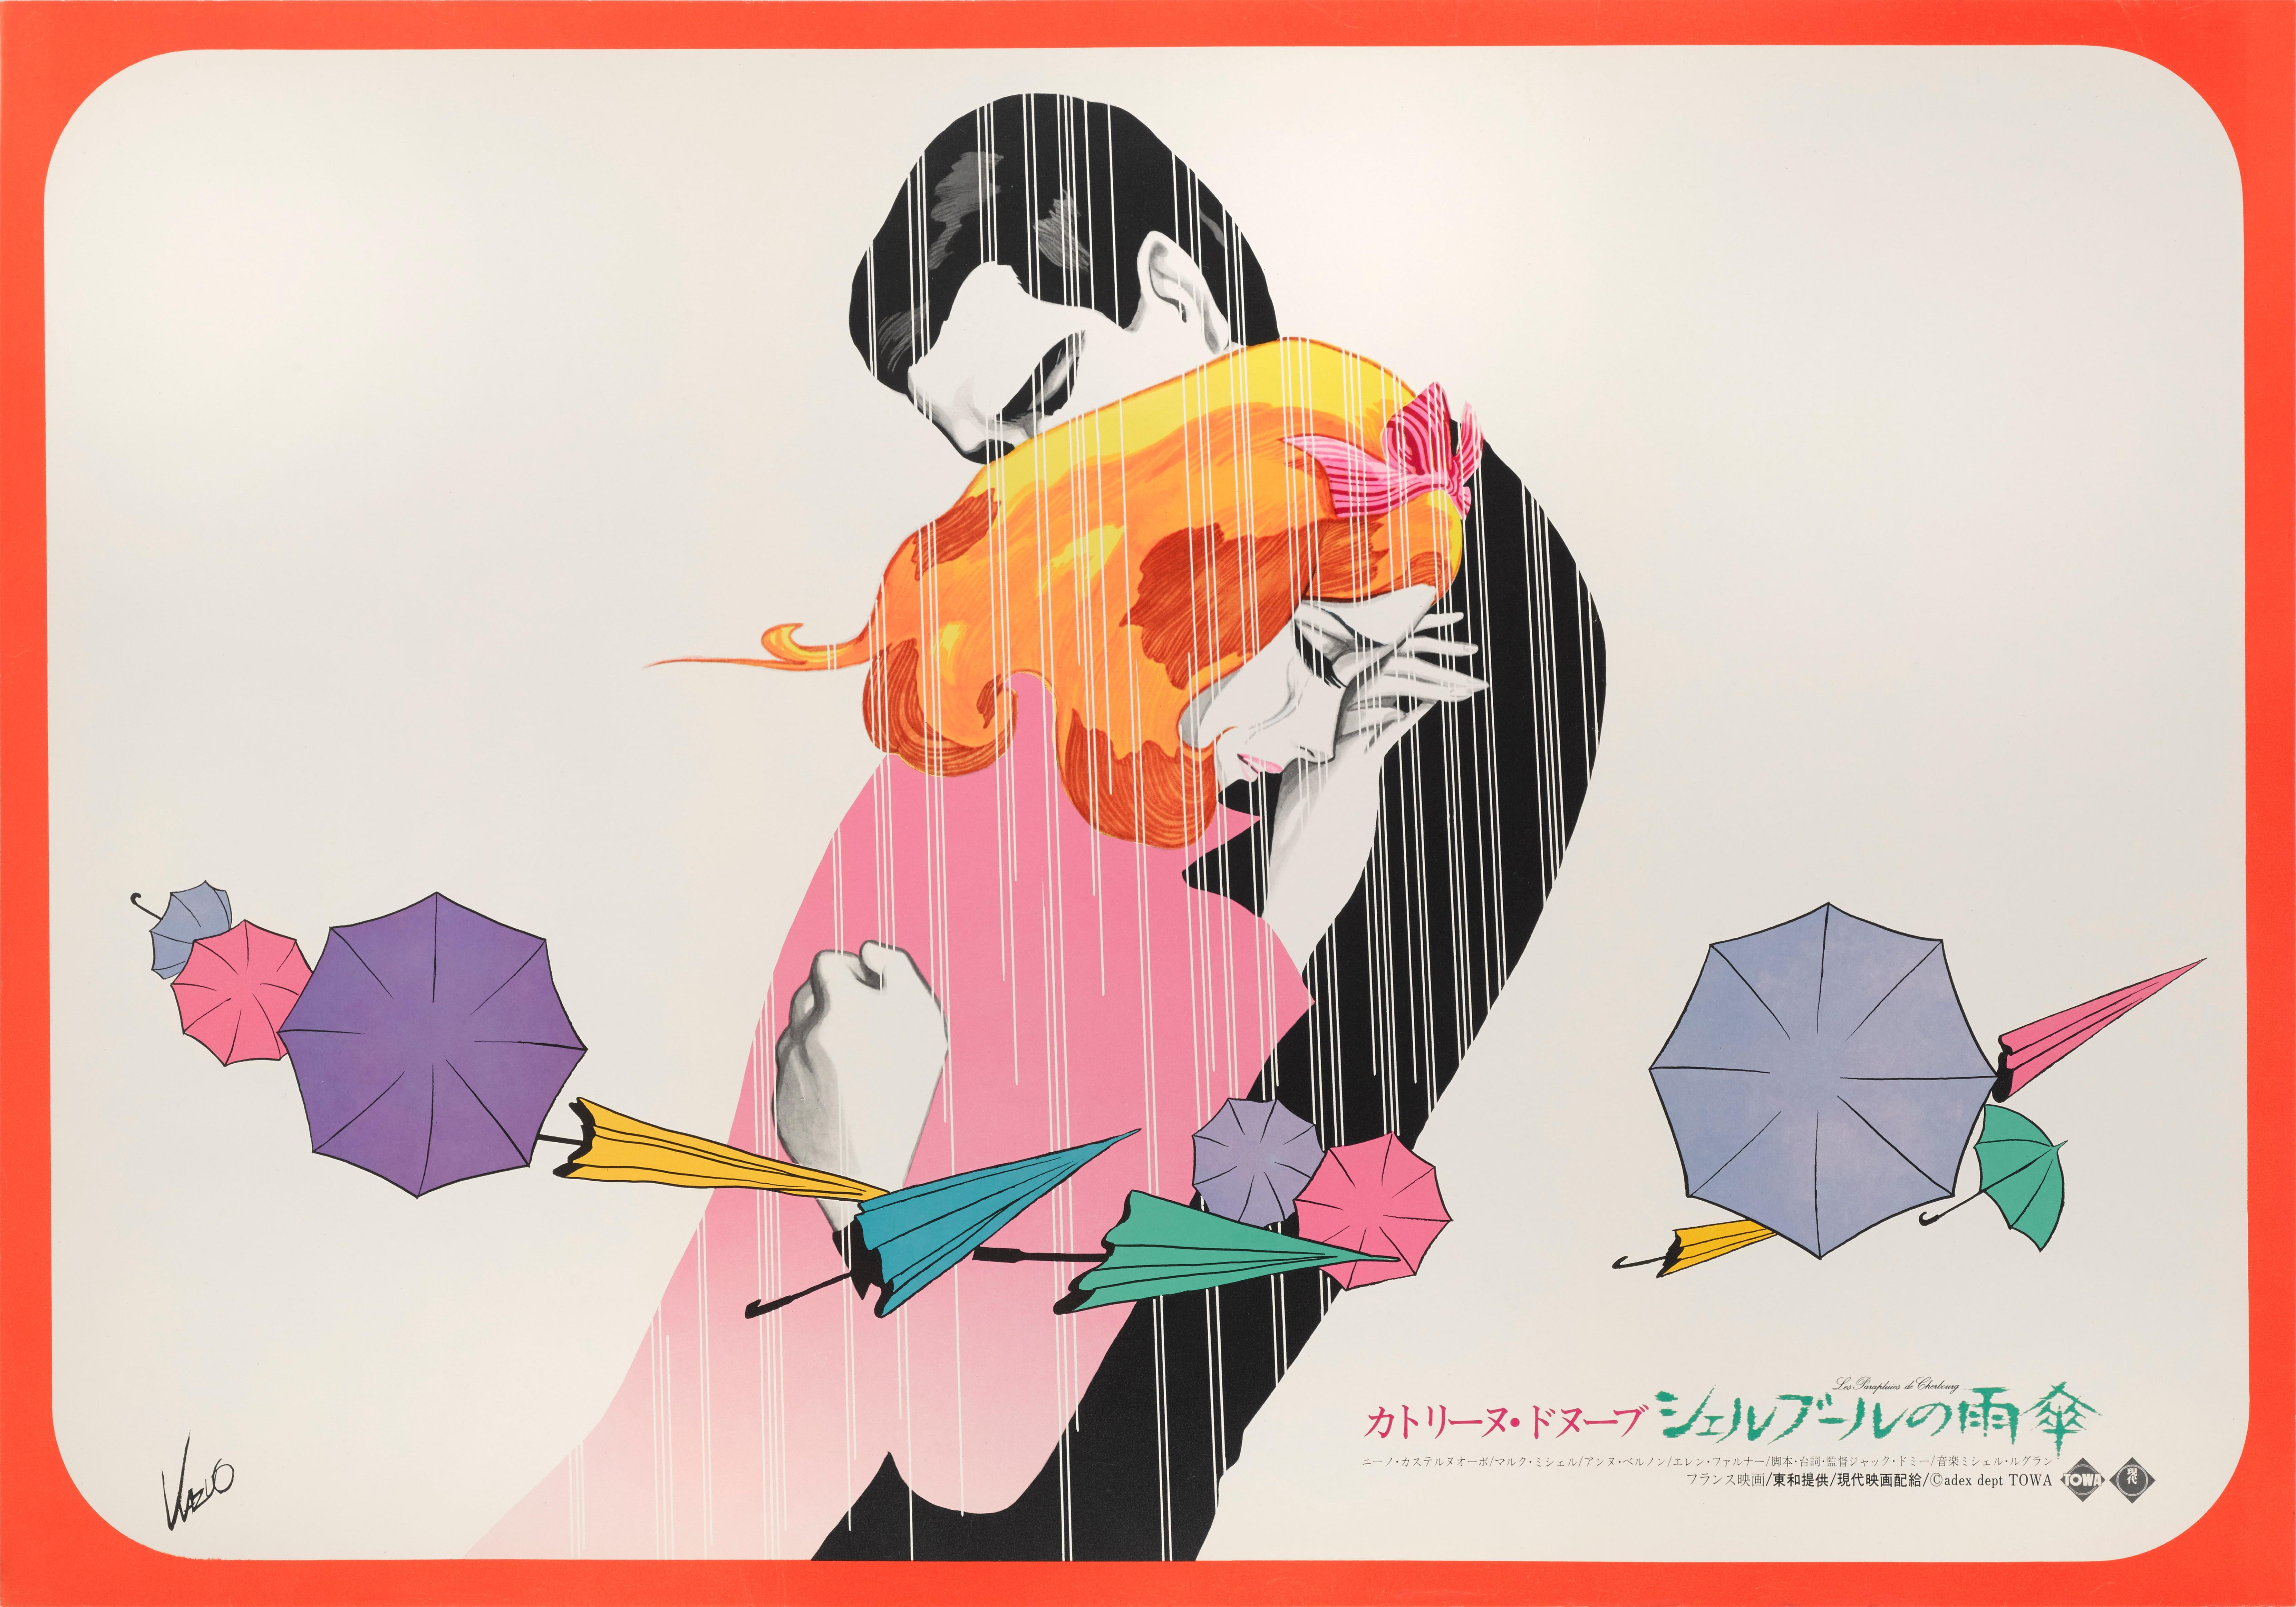 Japanese Les Parapluies De Cherbourg / The Umbrellas of Cherbourg